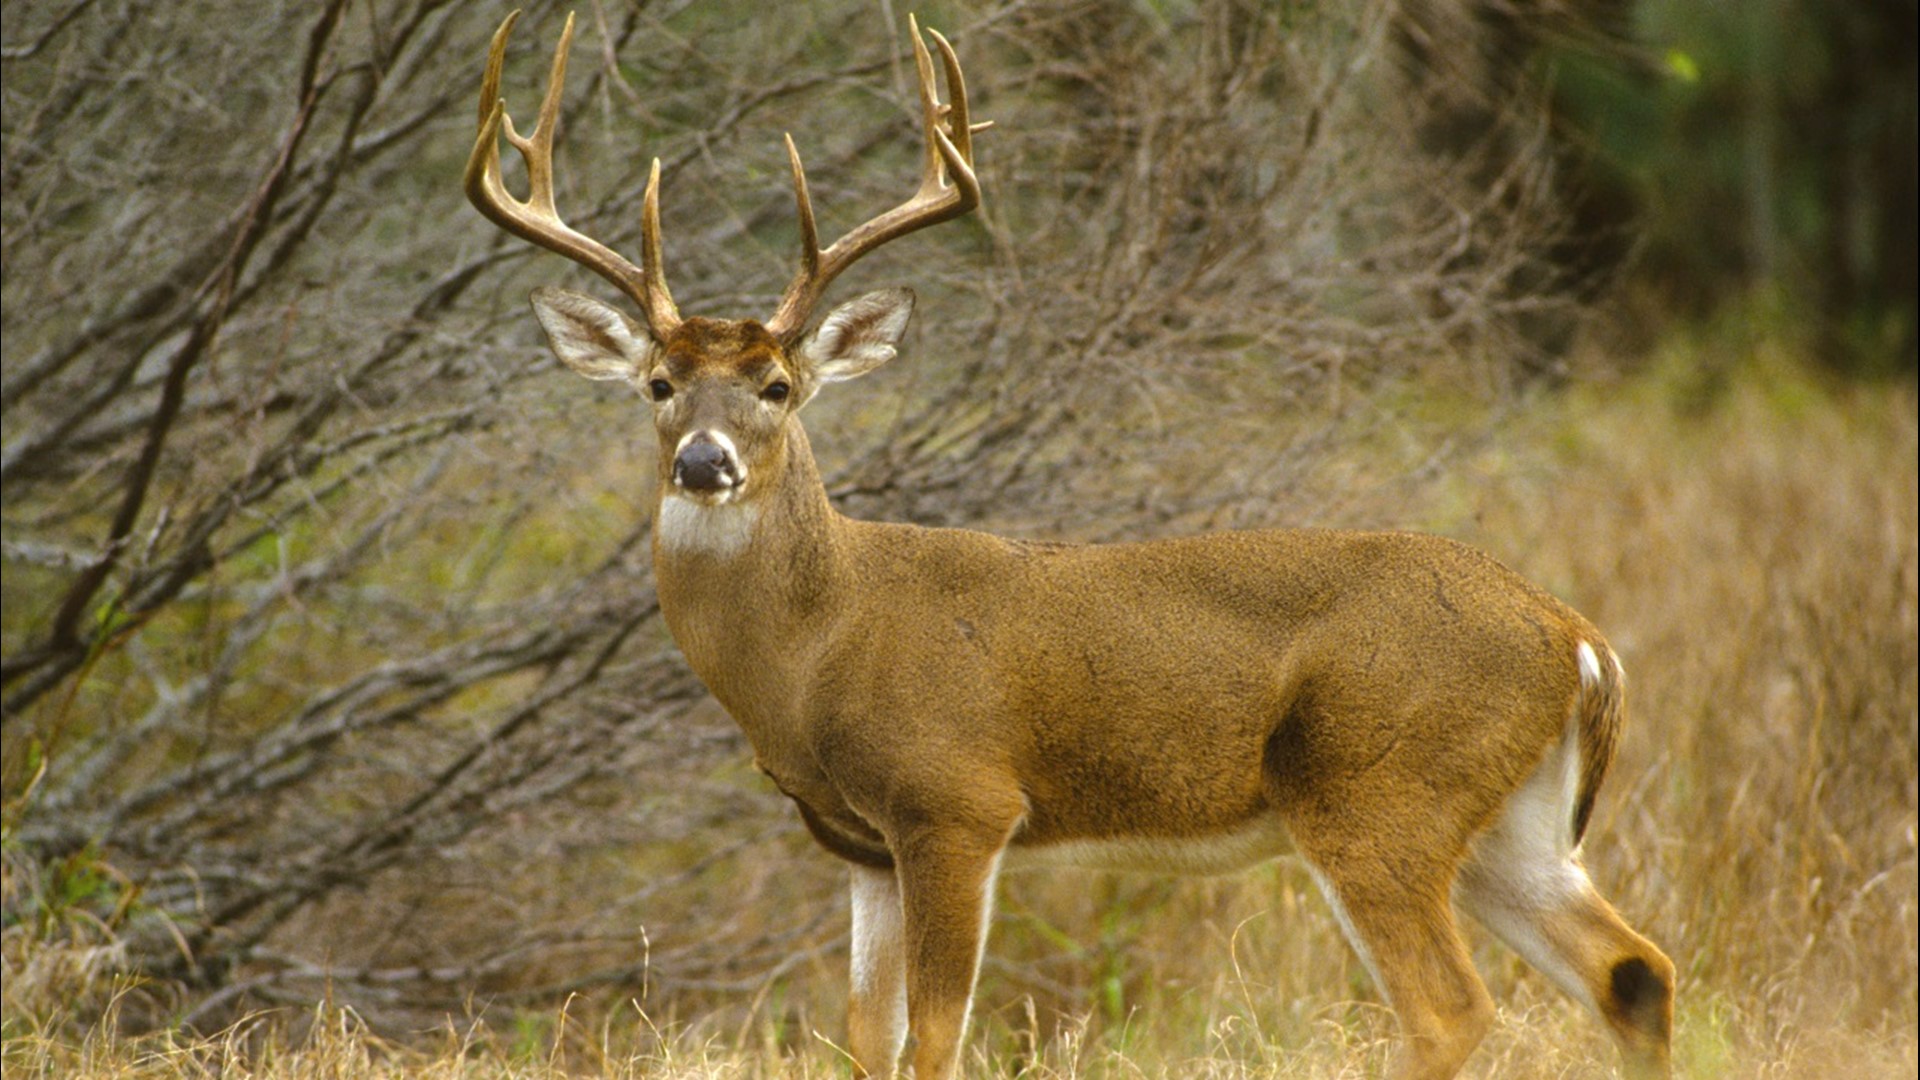 MN Youth deer hunting season is this weekend